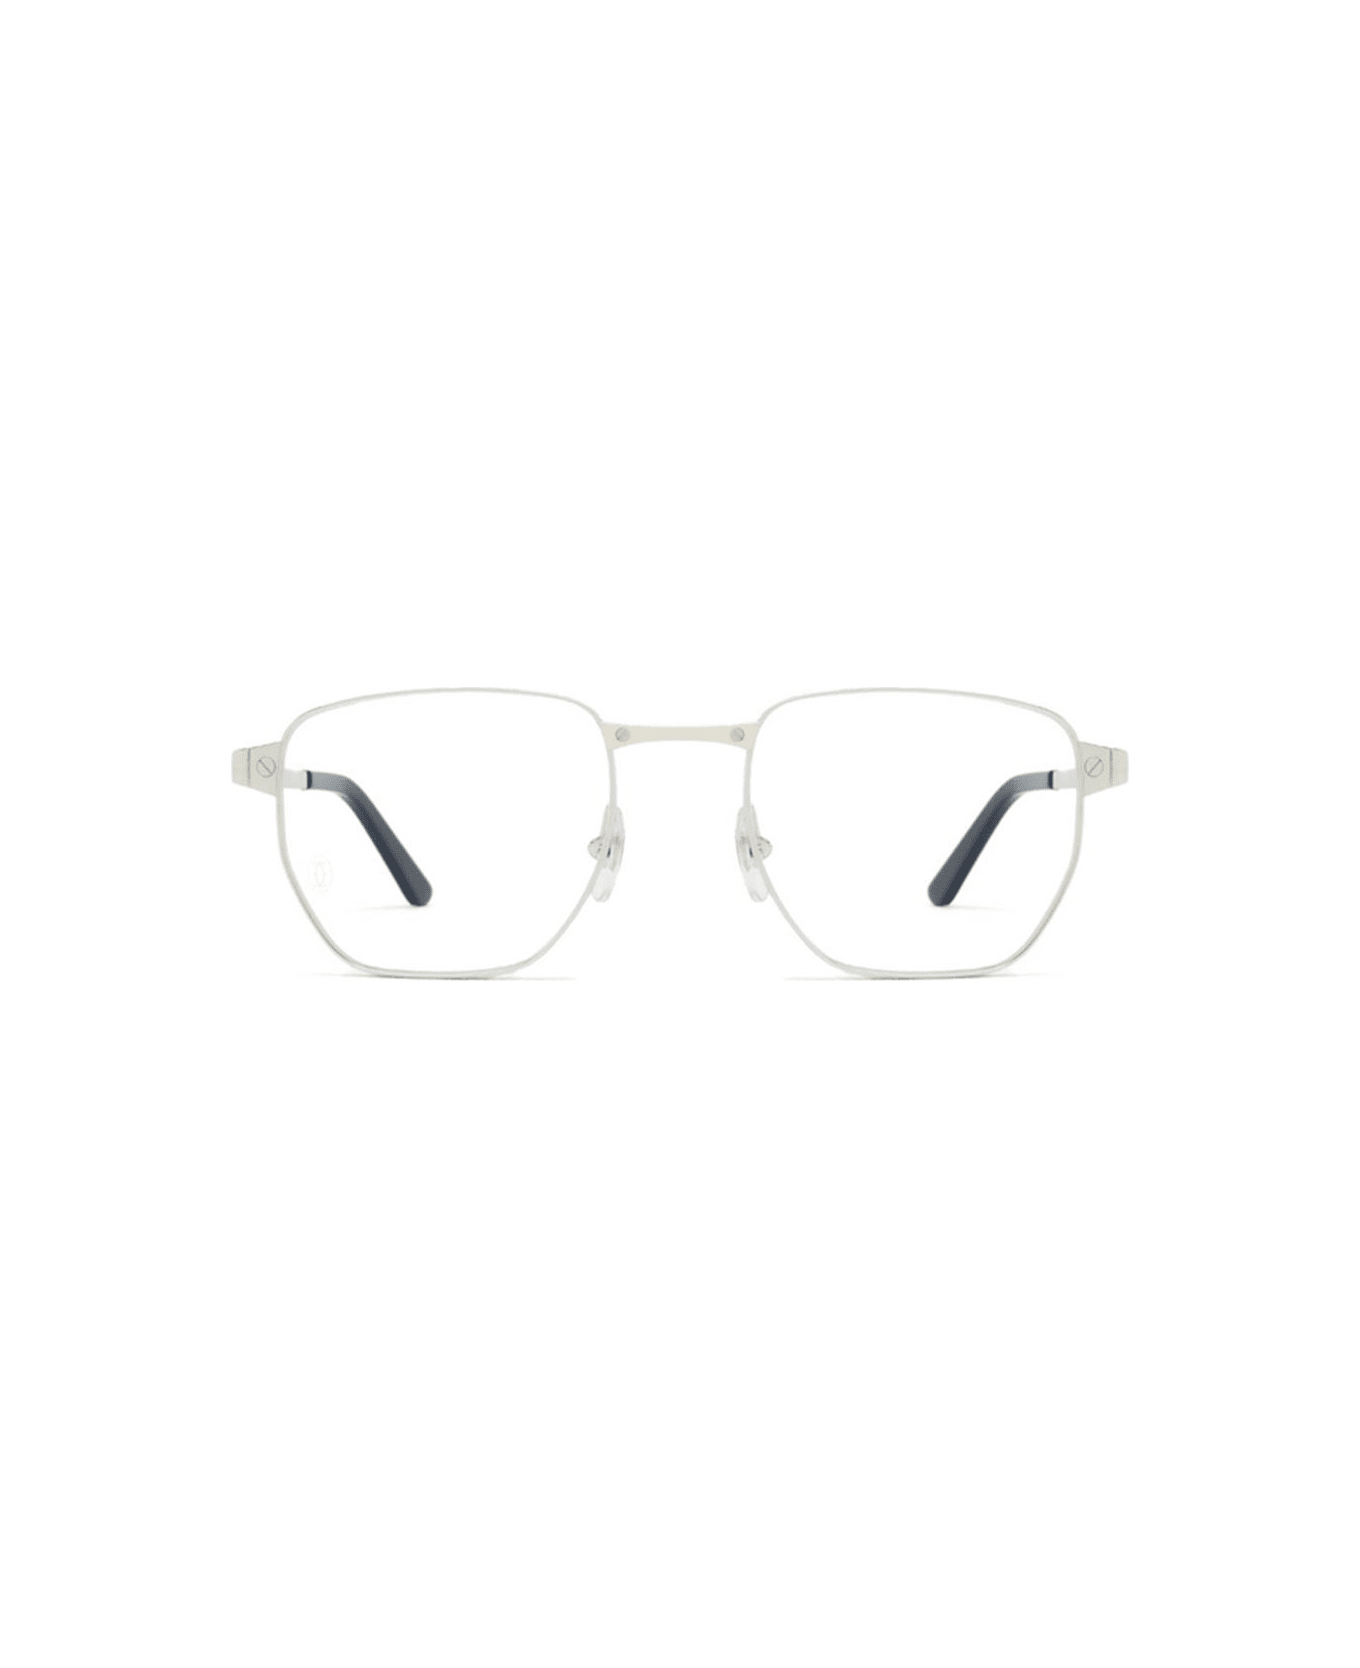 Cartier Eyewear Glasses - Silver